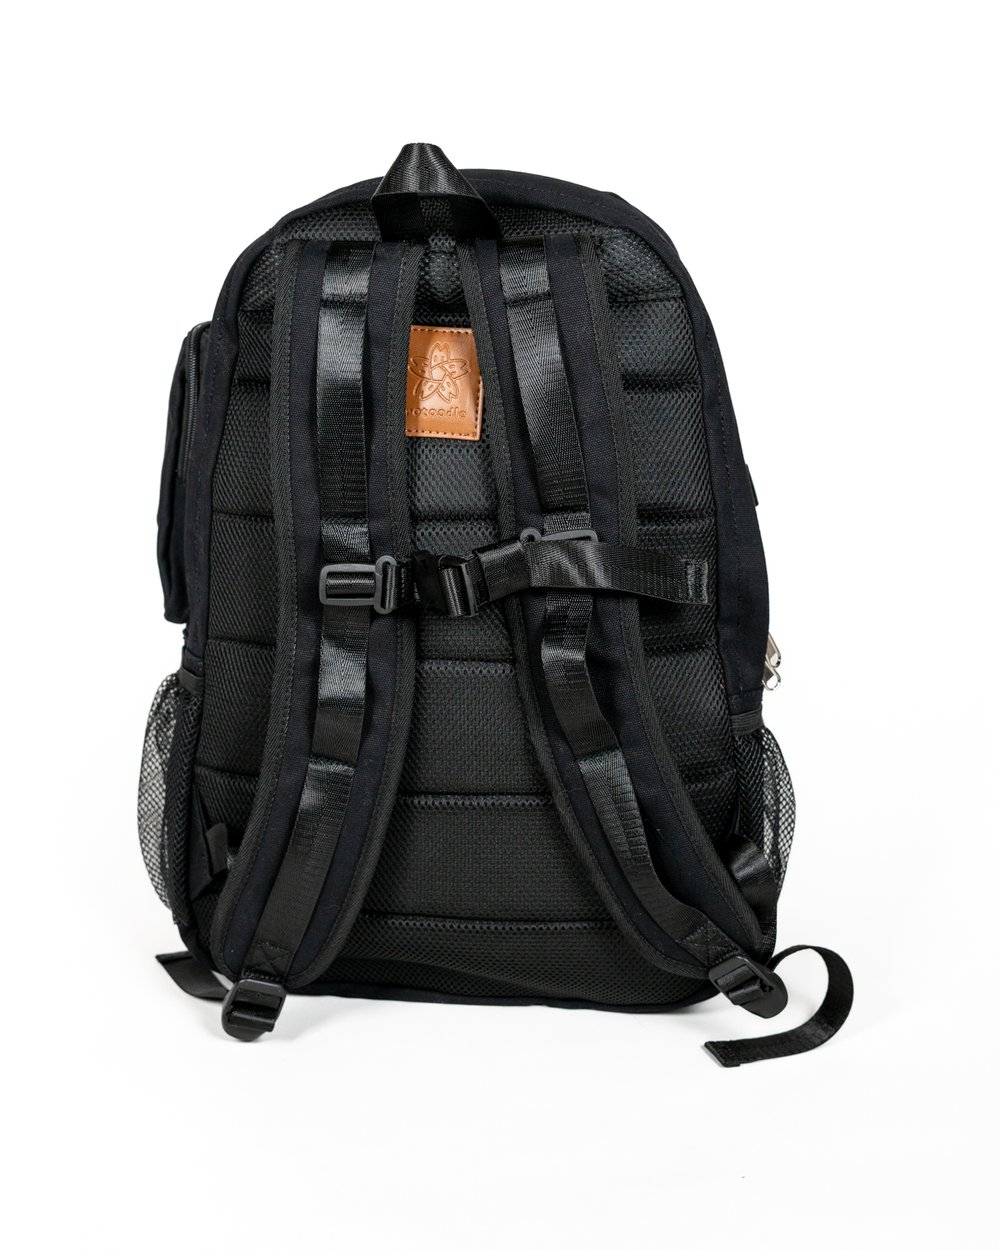 Functional Ita Backpack - Black